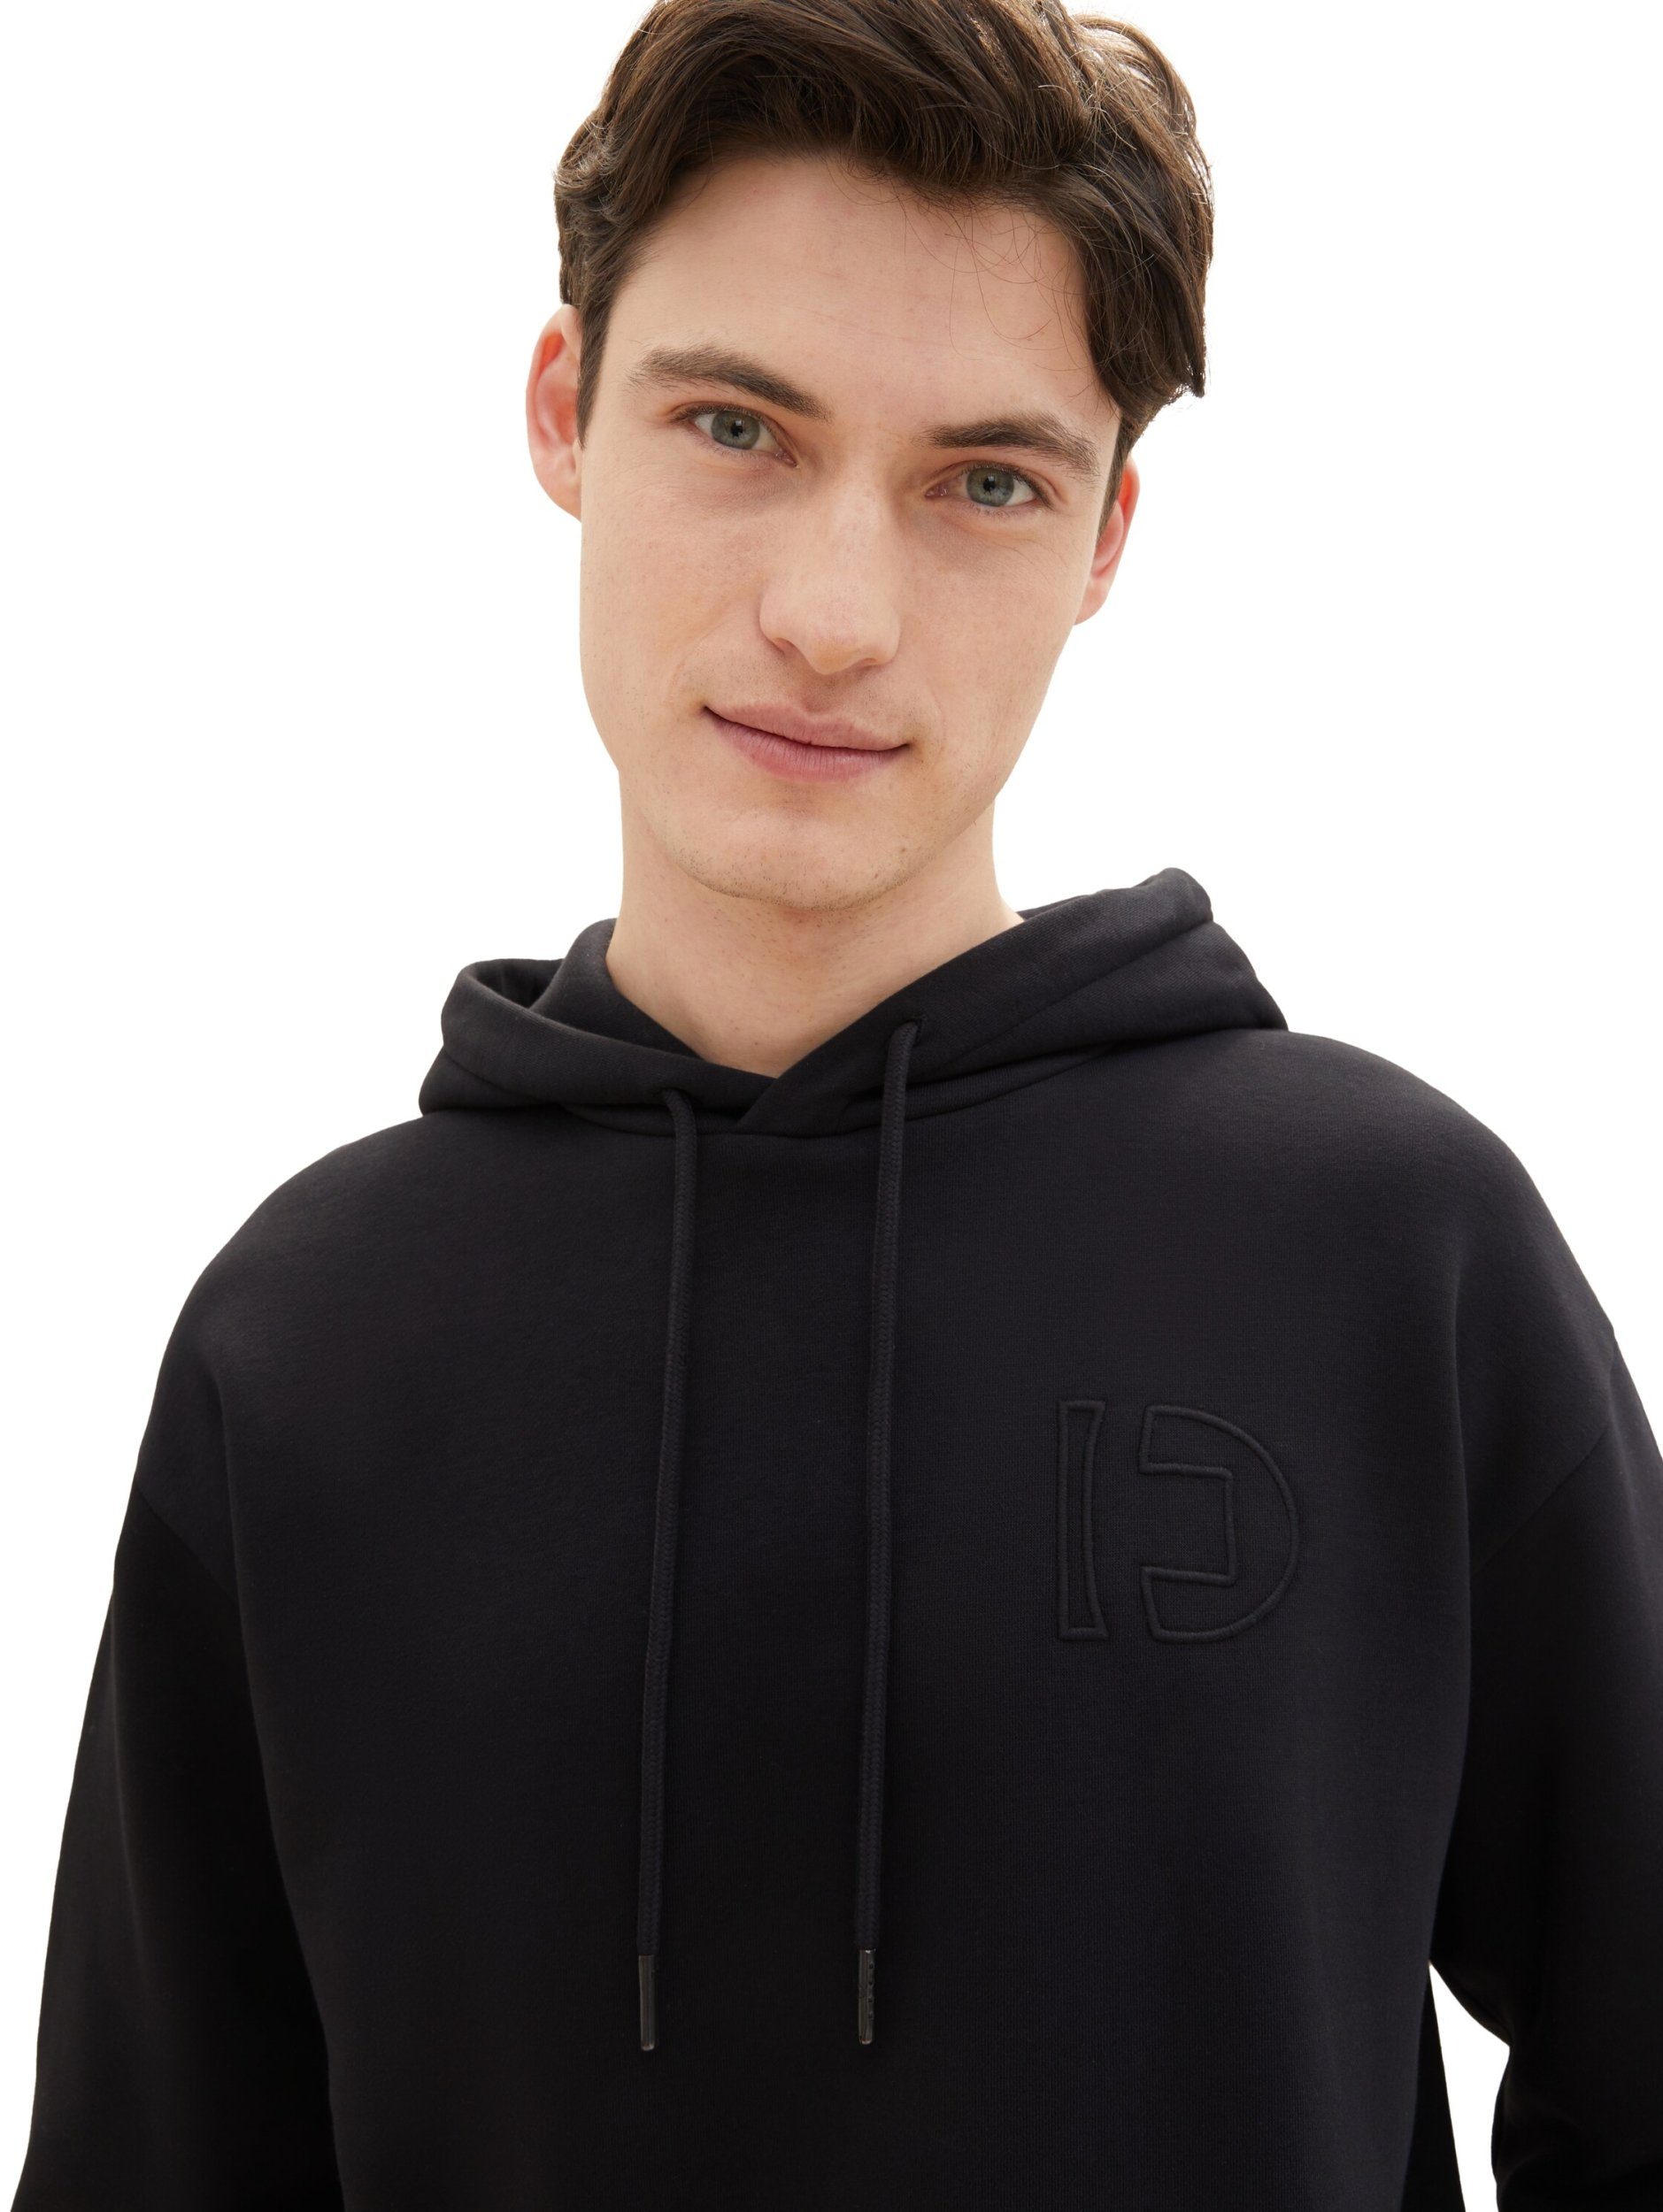 Denim Sweatshirt TOM Black hoodie with TAILOR embroidery